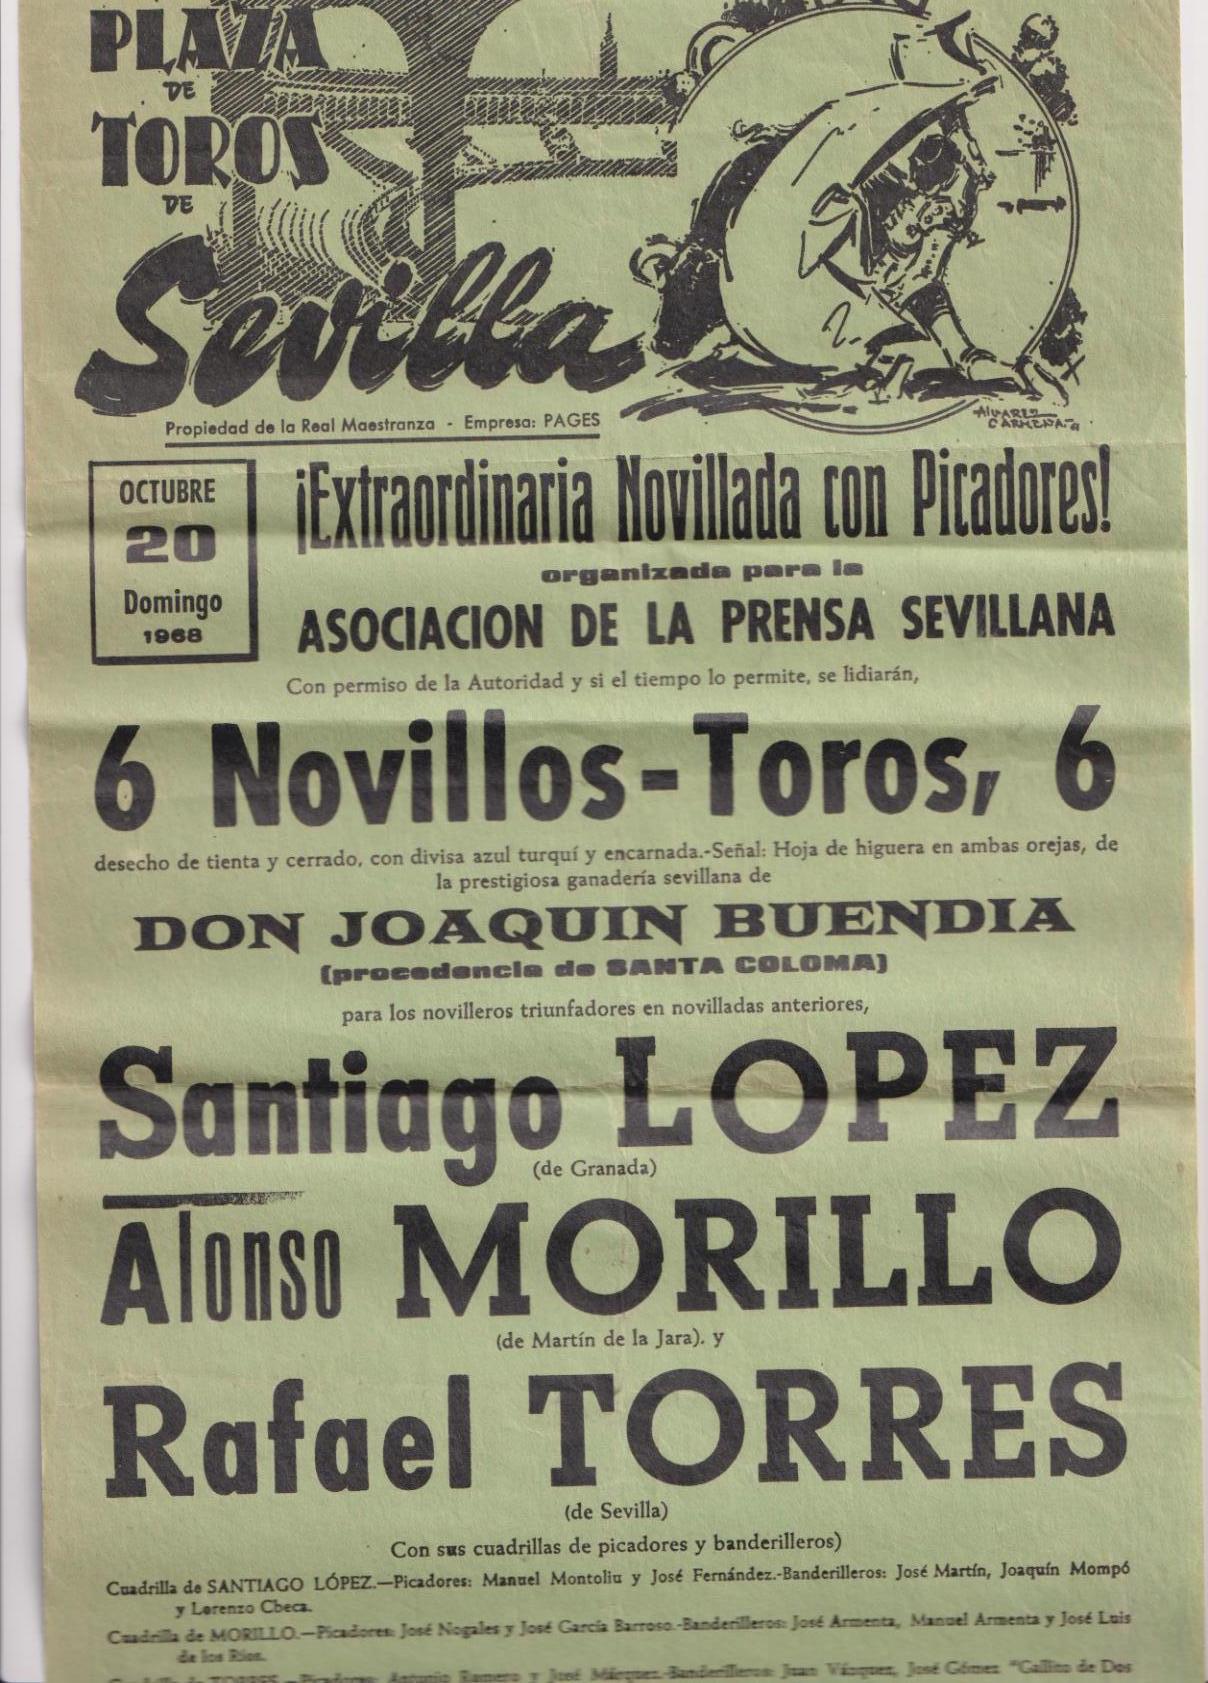 Cartel (45x21) Plaza de Toros de Sevilla 20 Octubre de 1968. Extraordinaria Novillada con Picadores